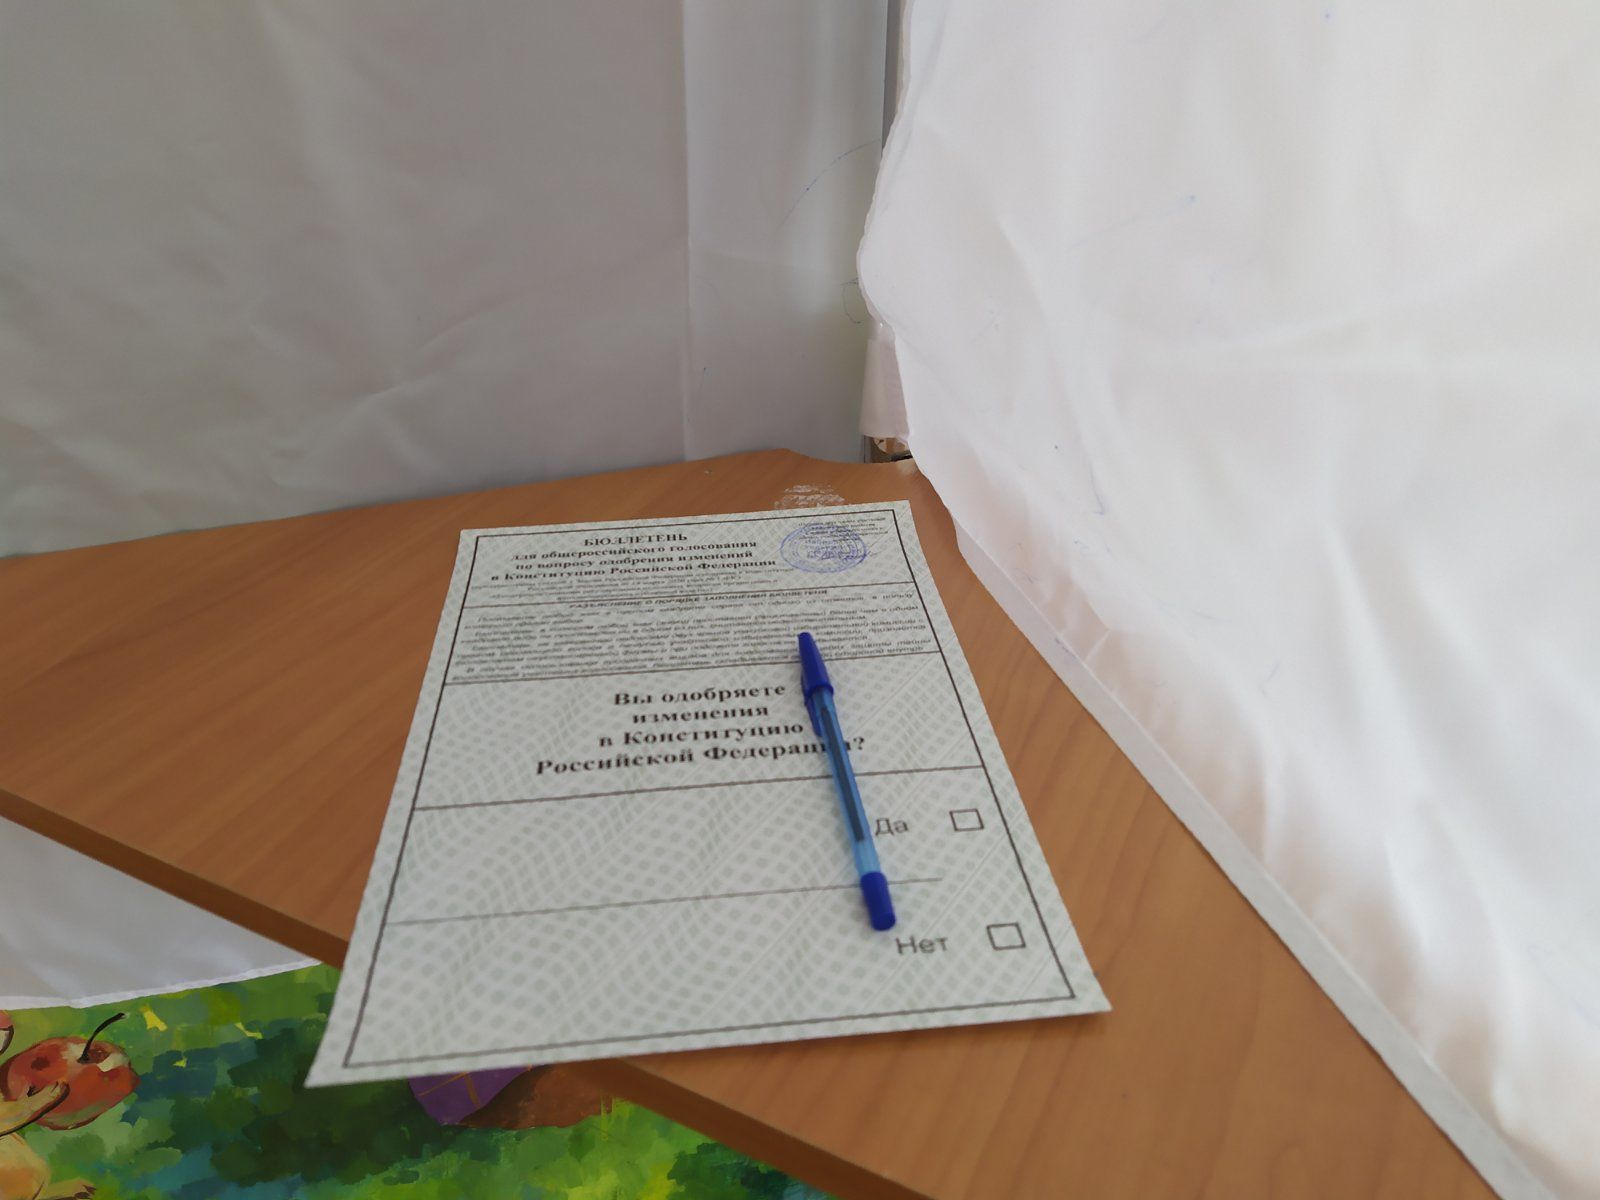 В Копейске организовали голосование в садовом товариществе